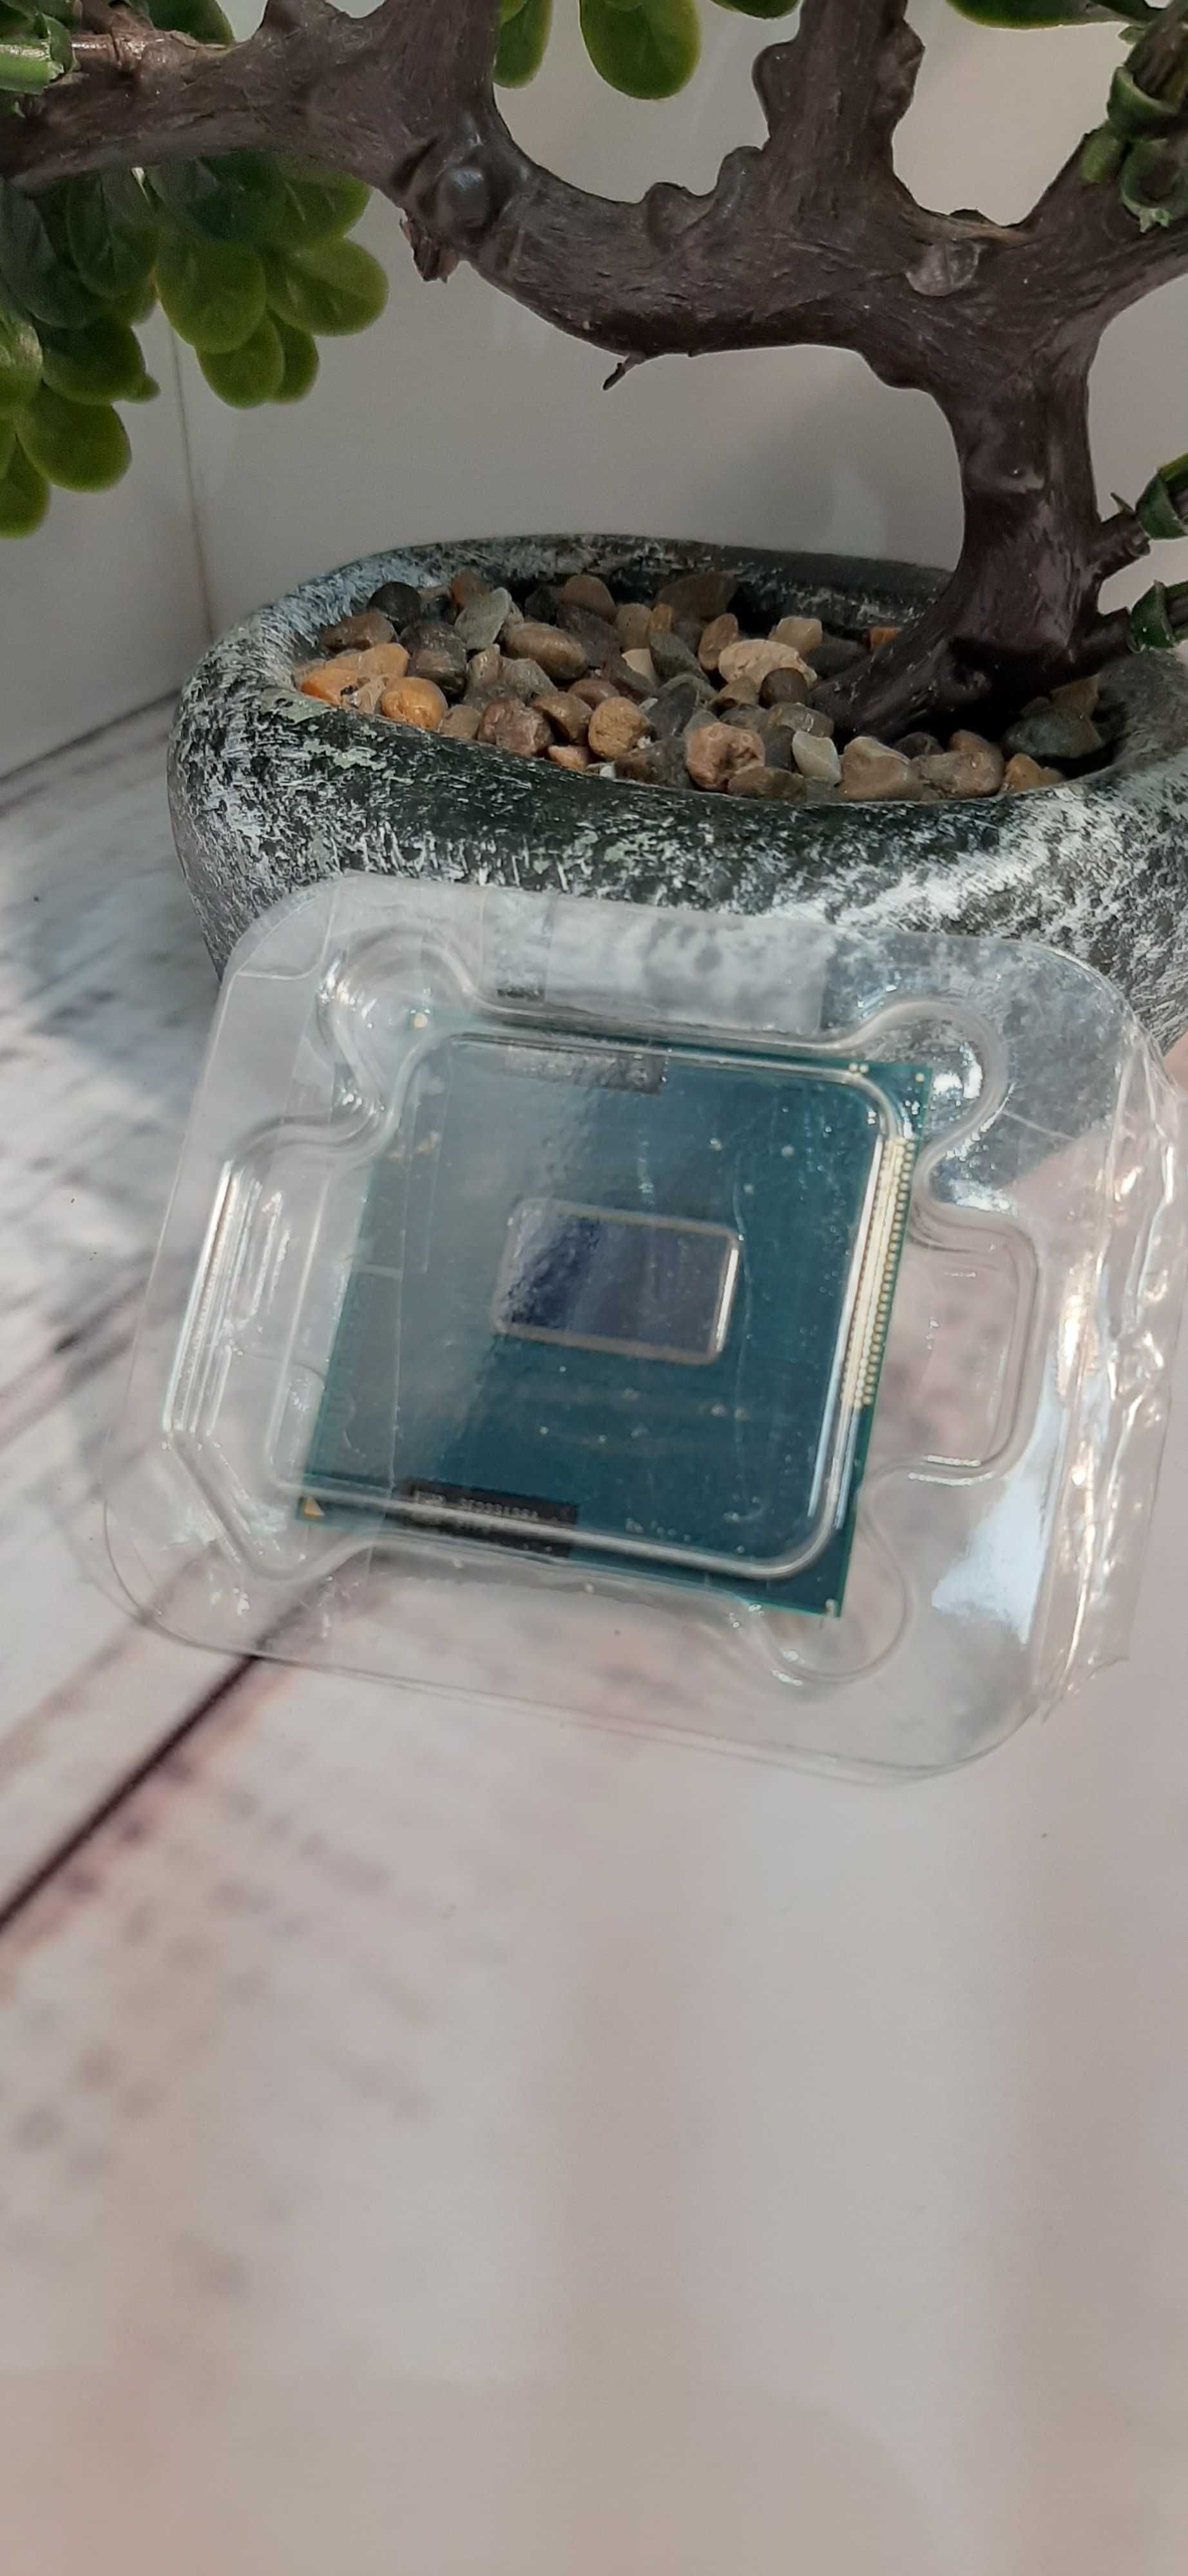 Процесор Intel Core i5-3320M 3M